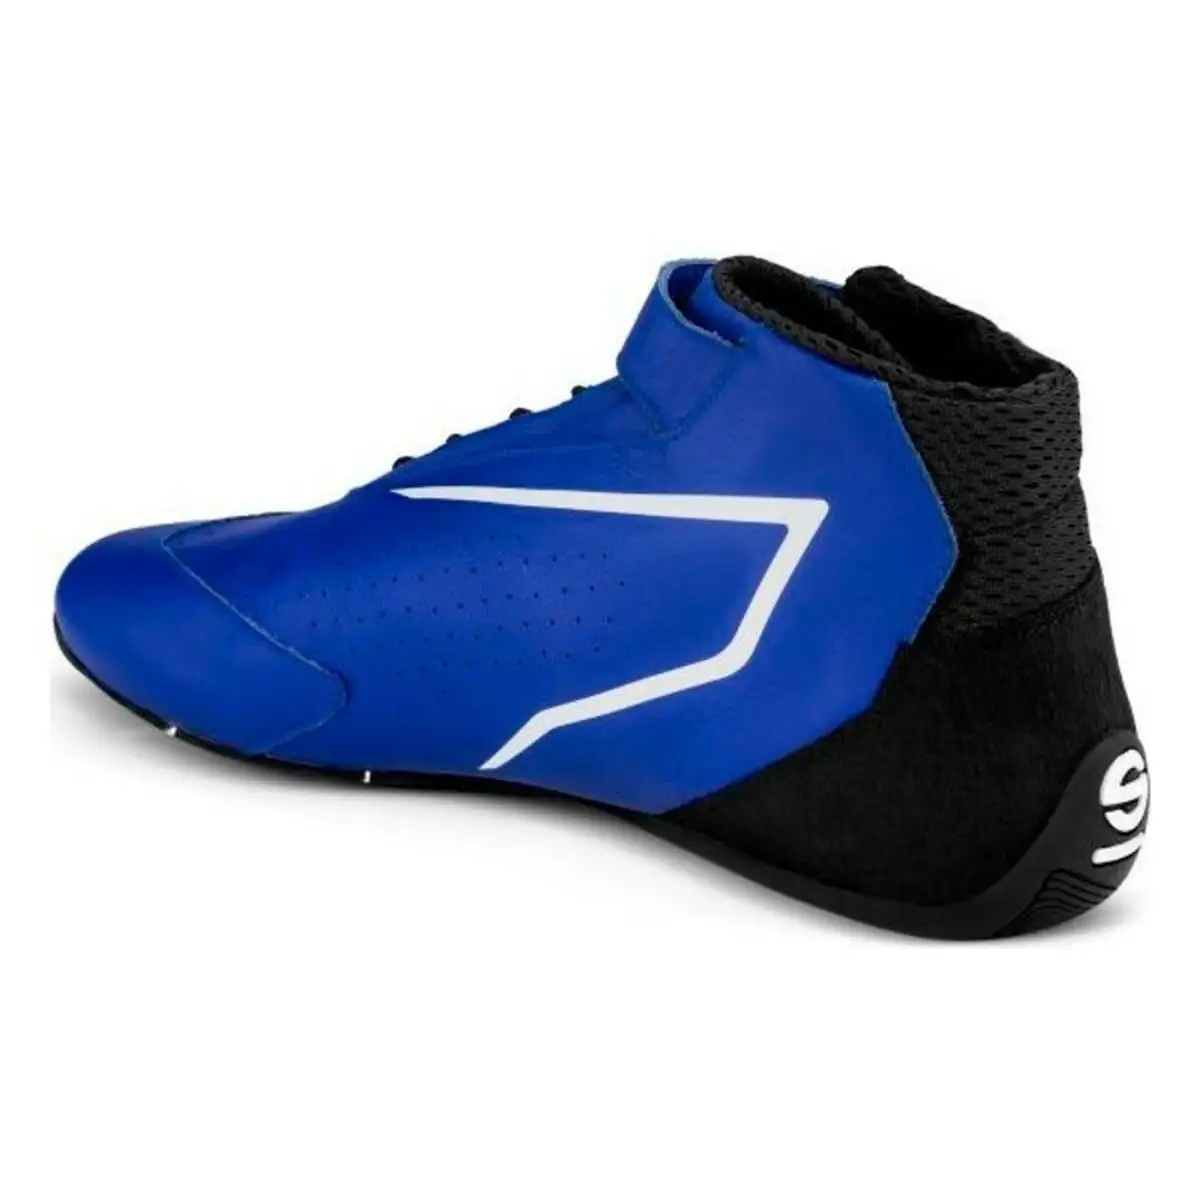 Chaussures de course sparco k skid bleu noir_4827. DIAYTAR SENEGAL - Votre Plateforme Shopping de Confiance. Naviguez à travers nos rayons et choisissez des produits fiables qui répondent à vos besoins quotidiens.